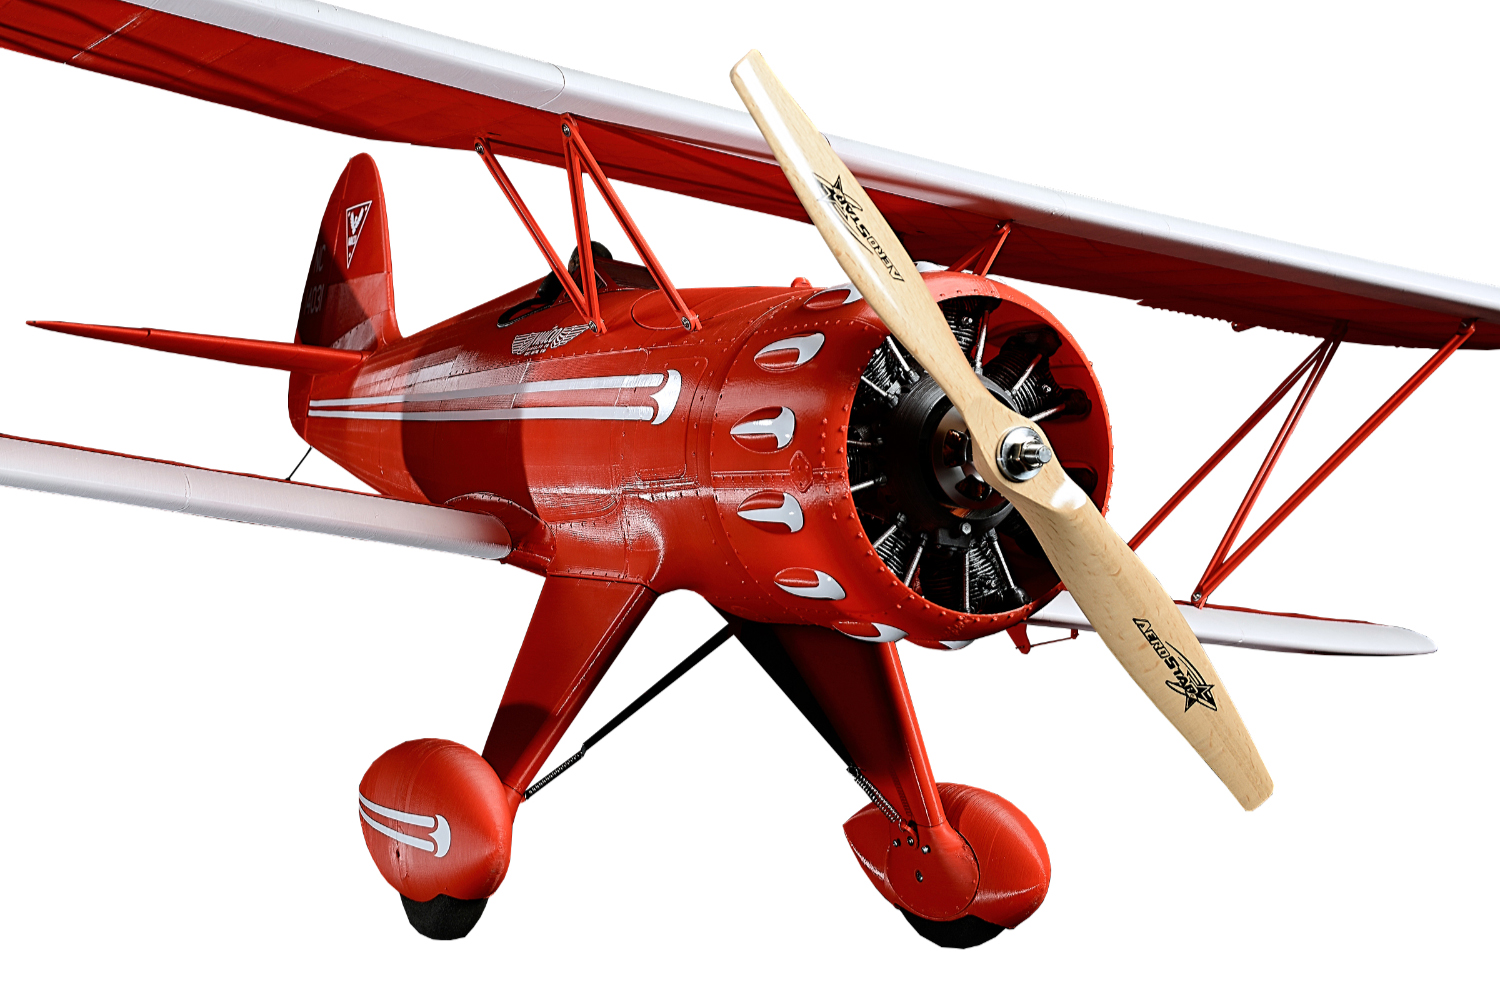 Dinkarville tomar intersección 3DLabPrint: ¡Conquista el cielo con aviones impresos en 3D! - Original  Prusa 3D Printers